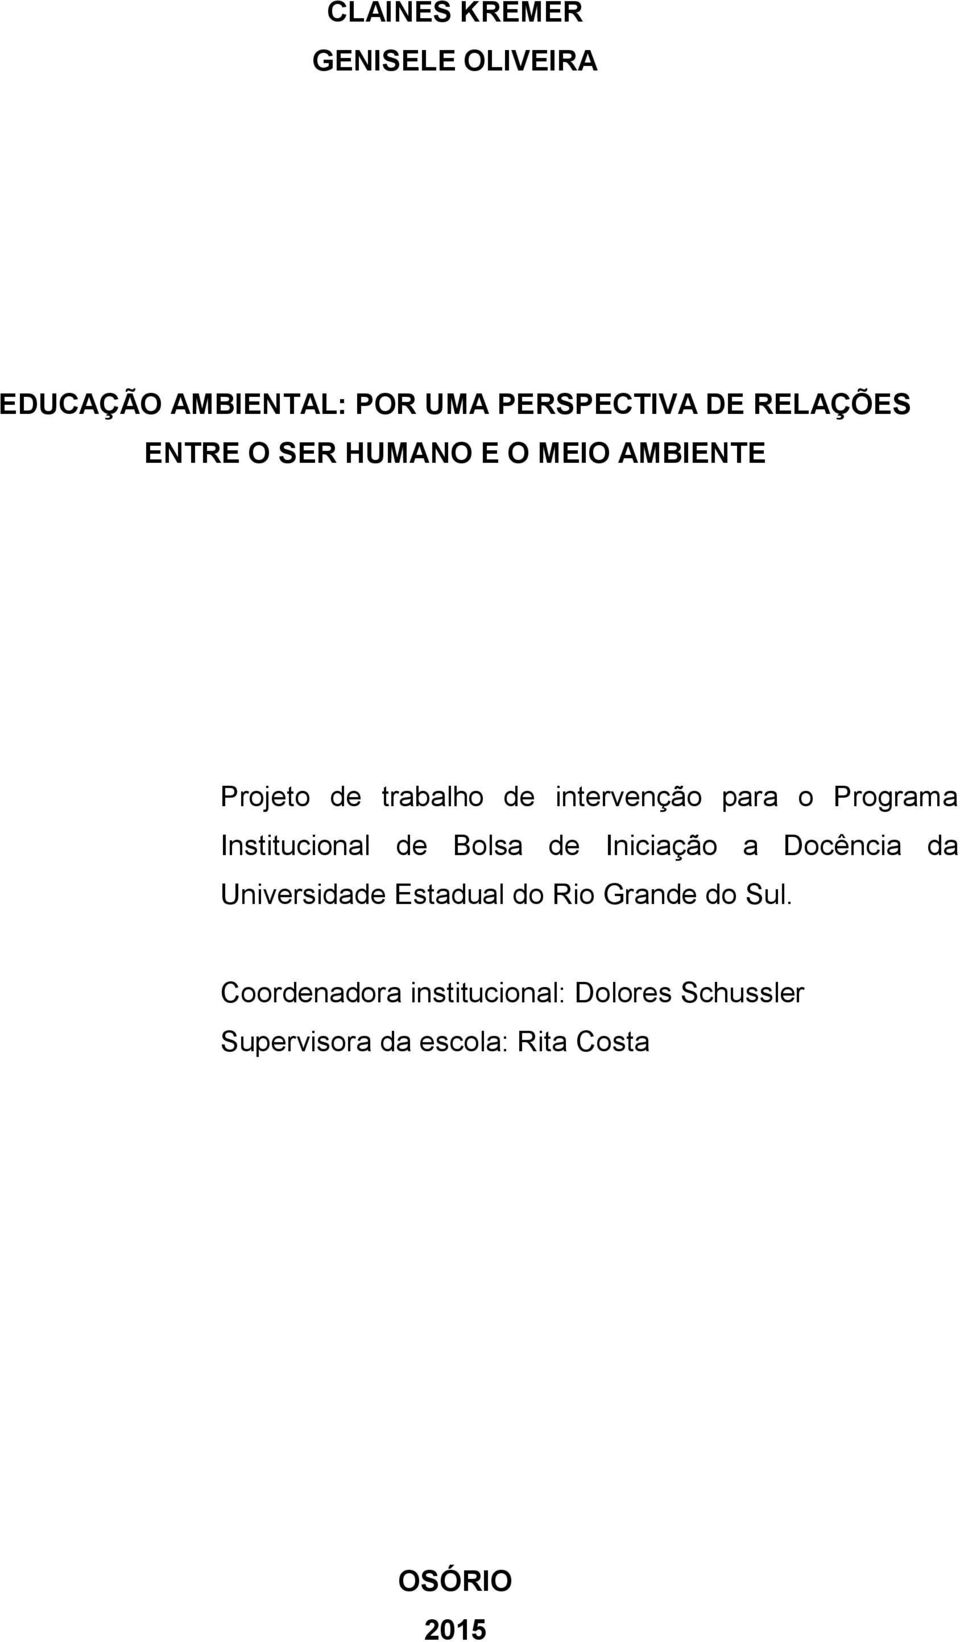 Institucional de Bolsa de Iniciação a Docência da Universidade Estadual do Rio Grande do